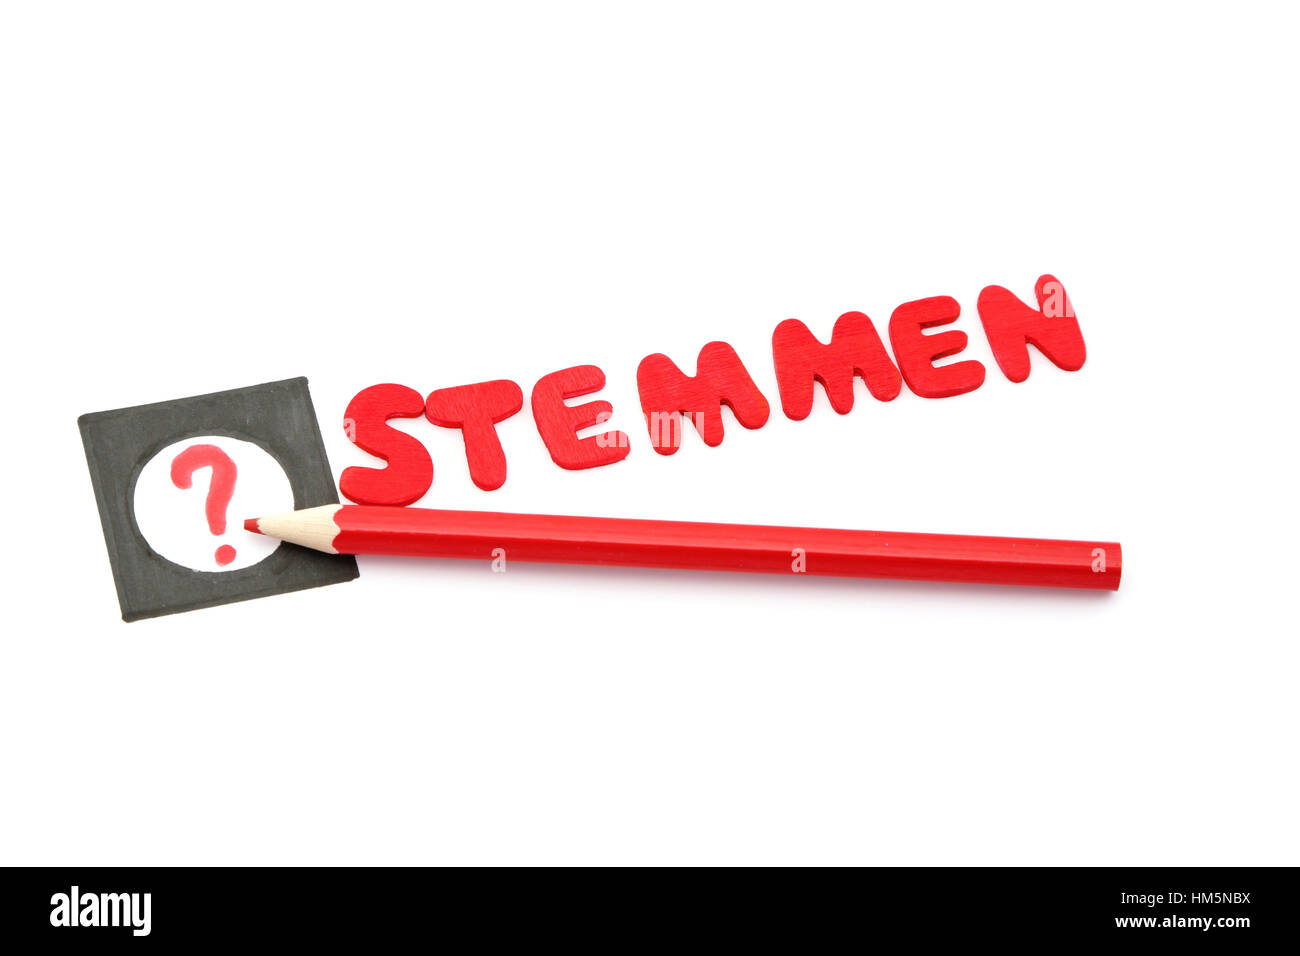 Un lápiz de color rojo y la palabra stemmen que significa votar en holandés  para las próximas elecciones, el 15 de marzo de 2017 en los Países Bajos  Fotografía de stock - Alamy